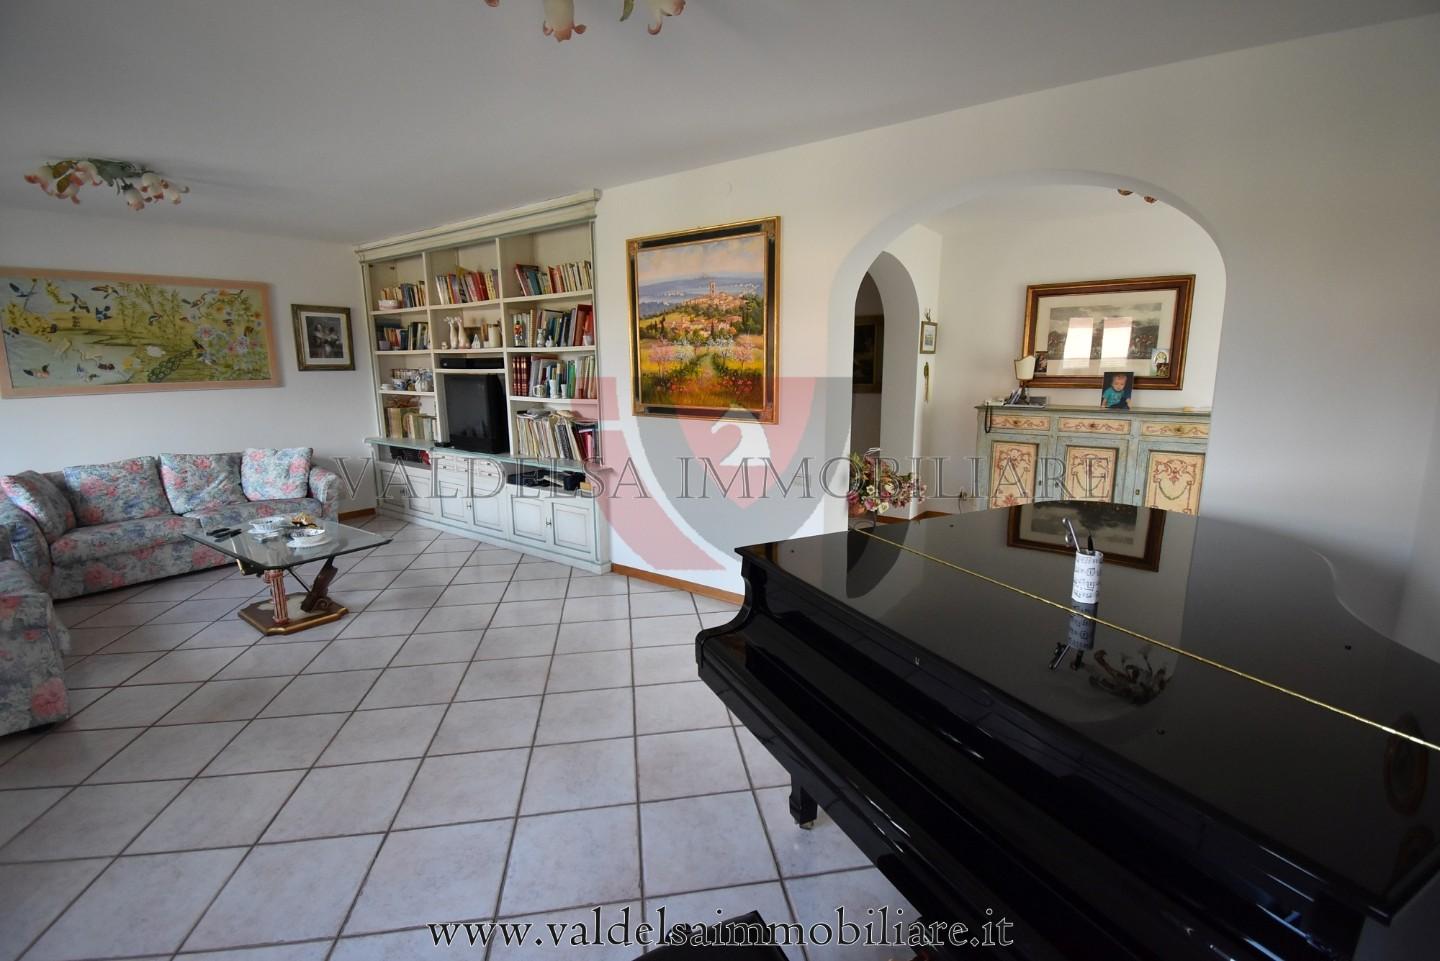 Villa in vendita a Colle di Val d'Elsa, 8 locali, prezzo € 650.000 | PortaleAgenzieImmobiliari.it